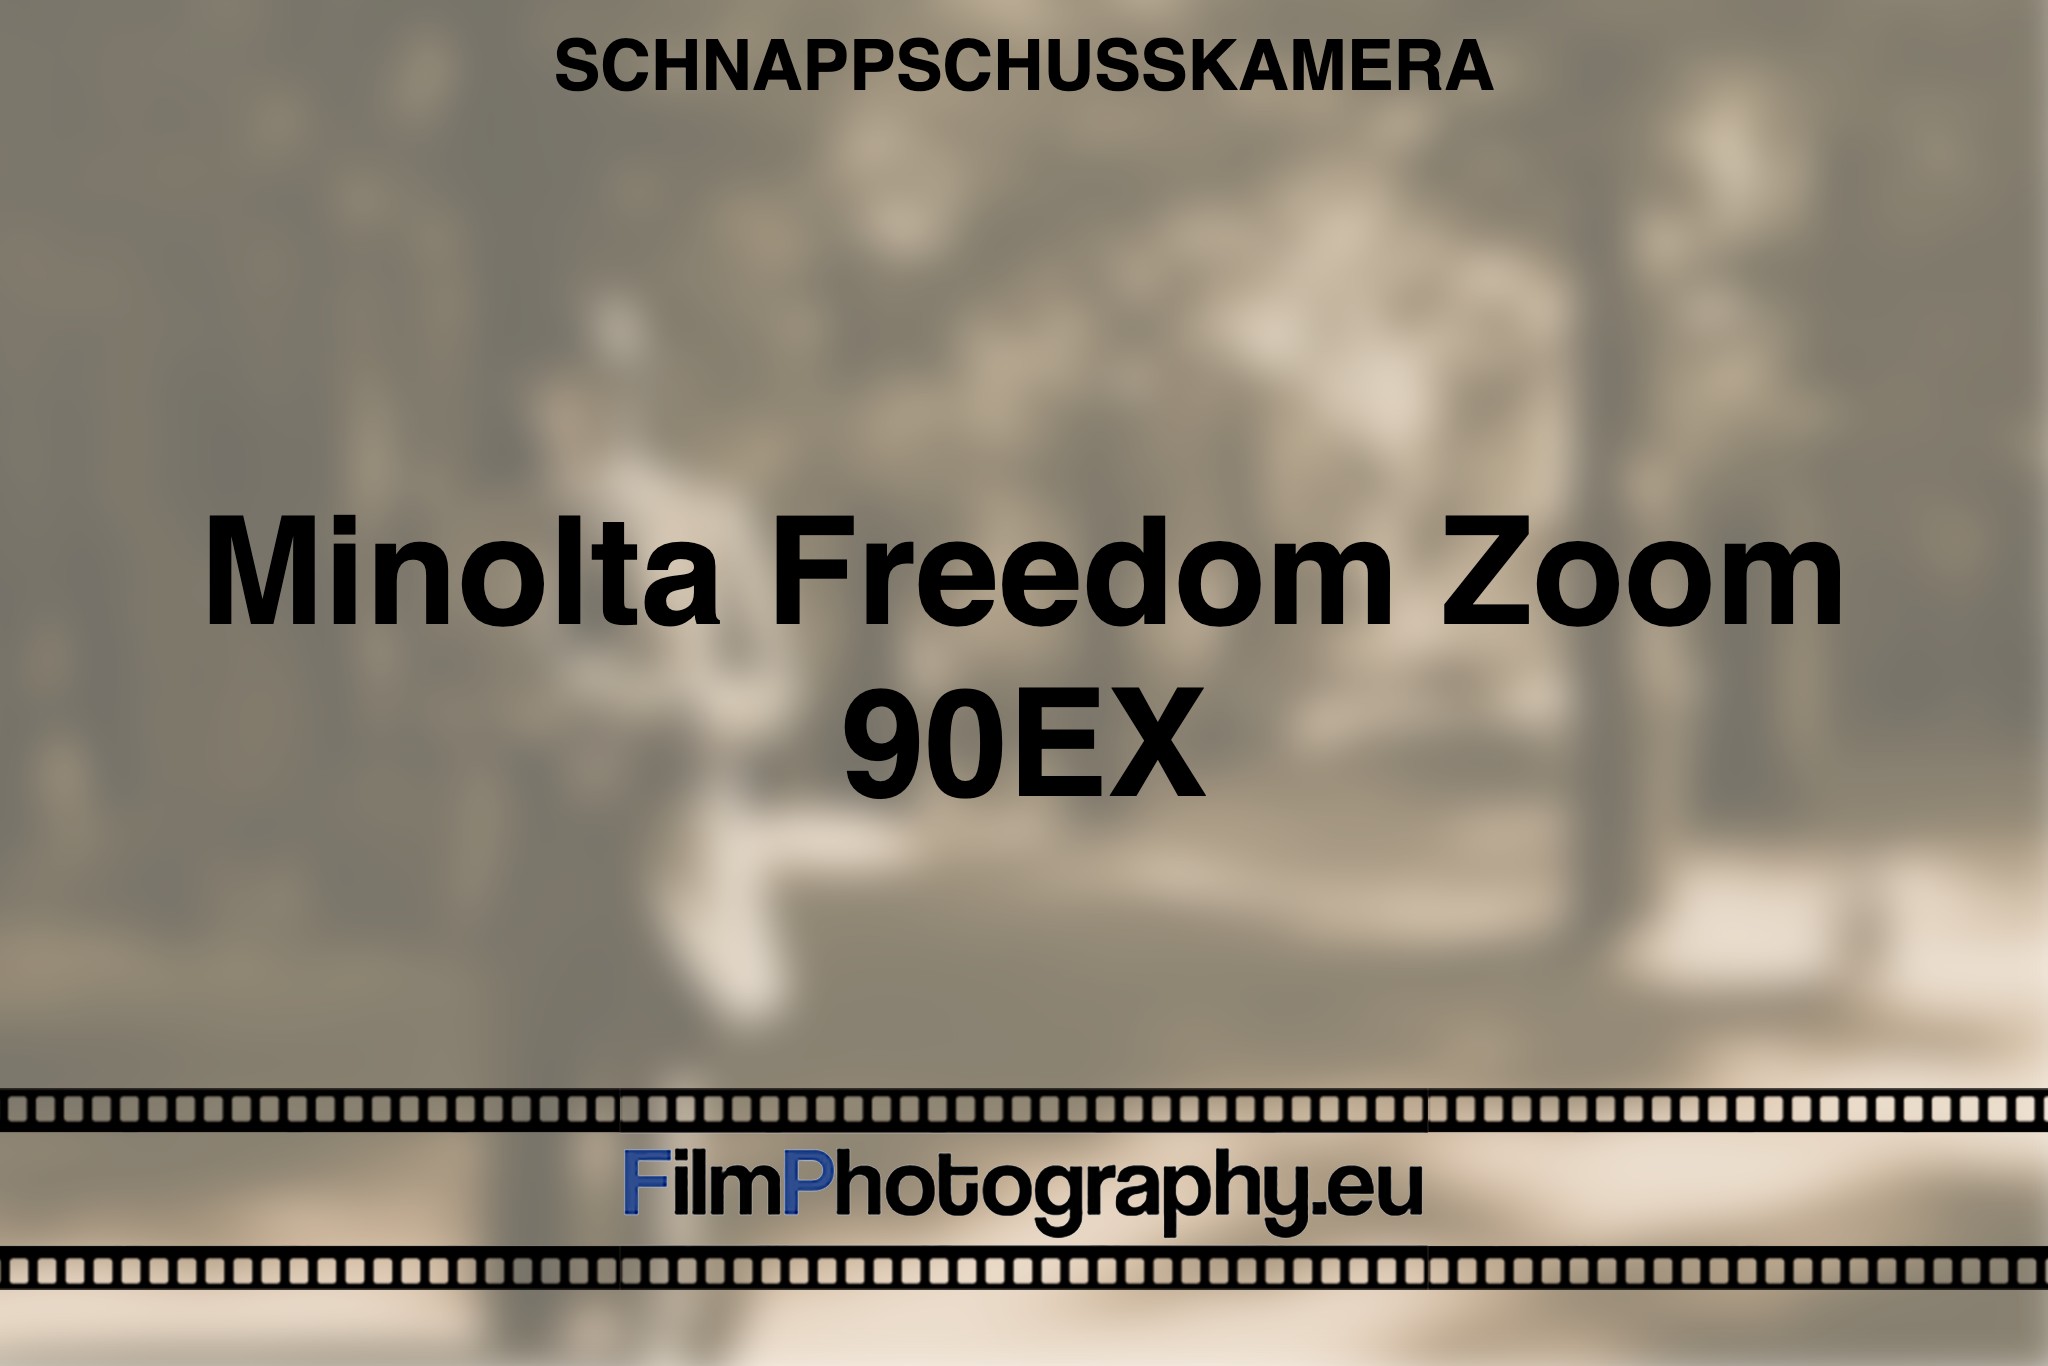 minolta-freedom-zoom-90ex-schnappschusskamera-bnv